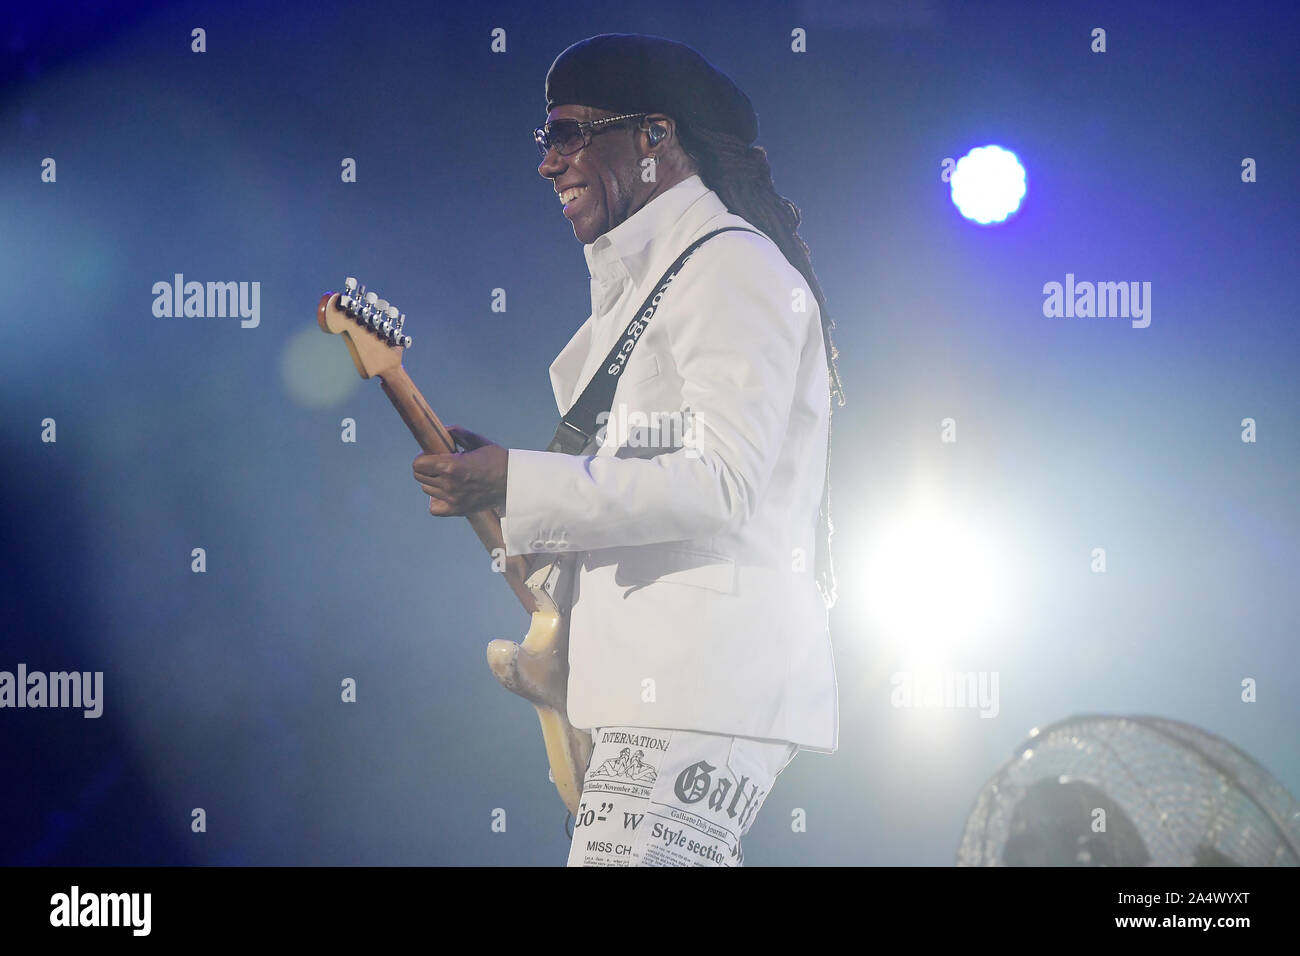 Rio de Janeiro, Brésil, le 3 octobre 2019. Le guitariste Nile Rodgers du groupe Chic durant son show à Rock in Rio en 2019 dans la ville de Rio de Janeiro. Banque D'Images